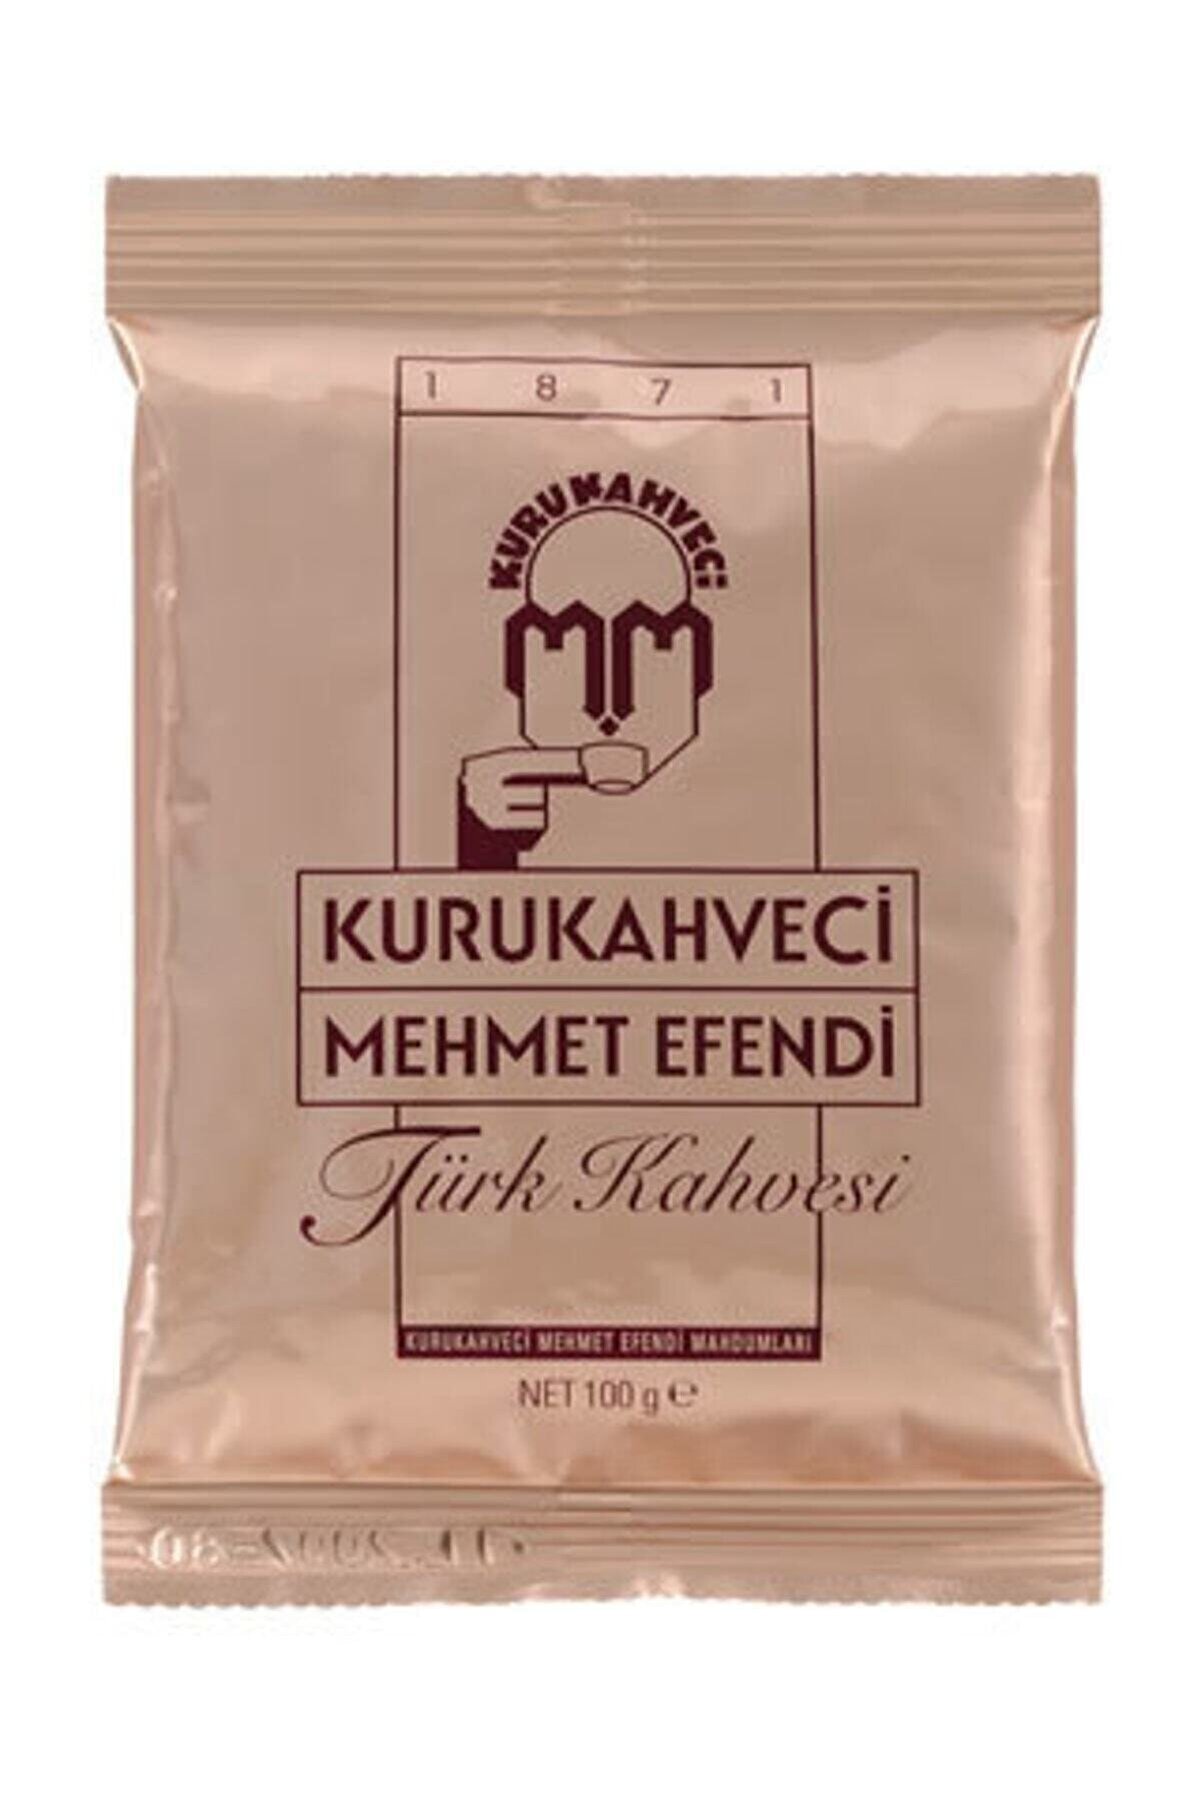 Kuru Kahveci Mehmet Efendi Türk Kahvesi 100 gr